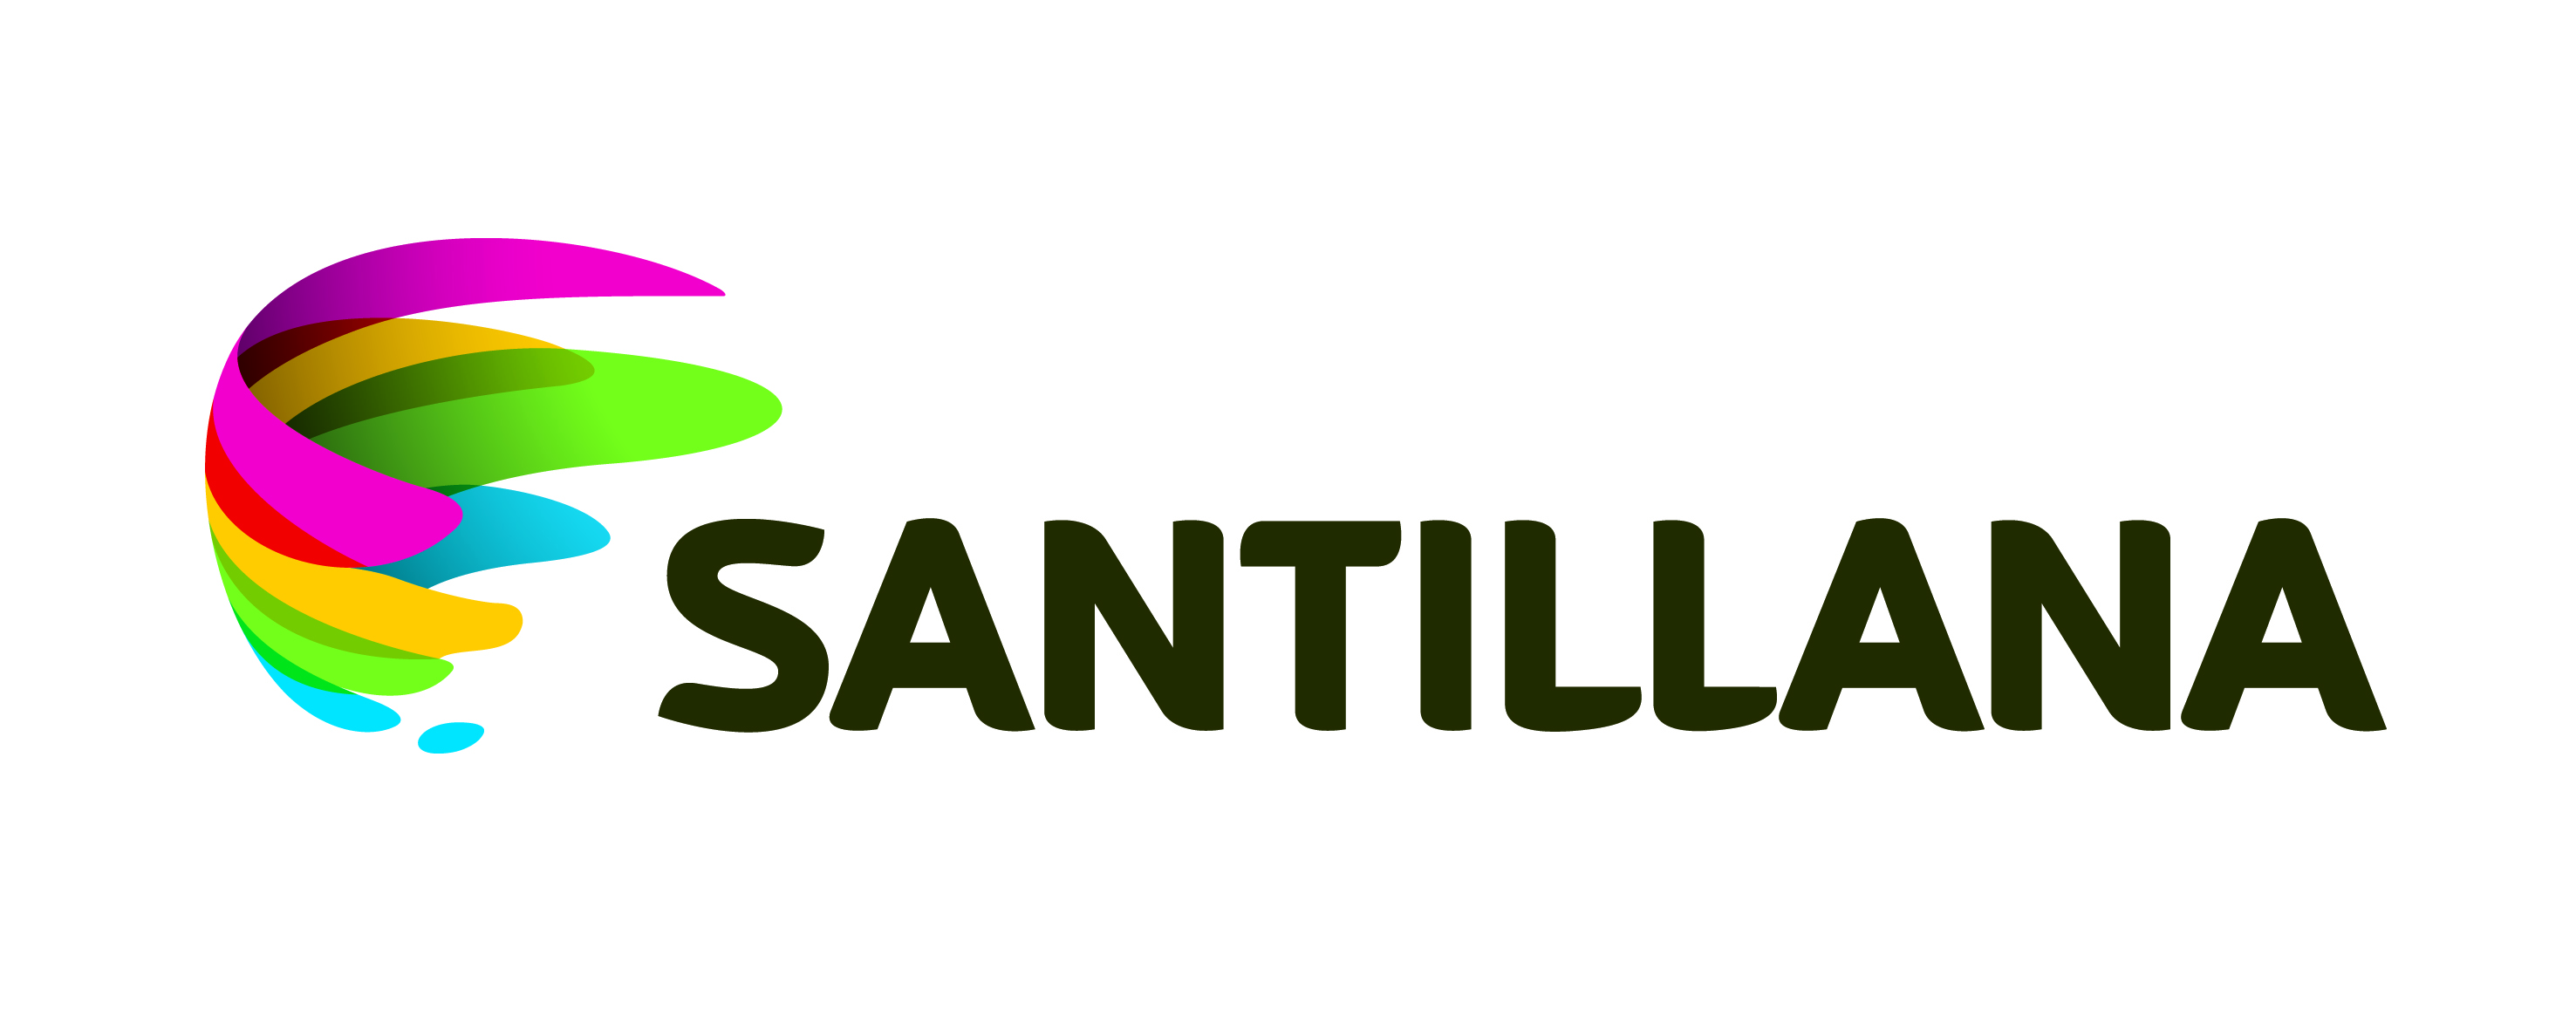 grupo santillana Logo photo - 1